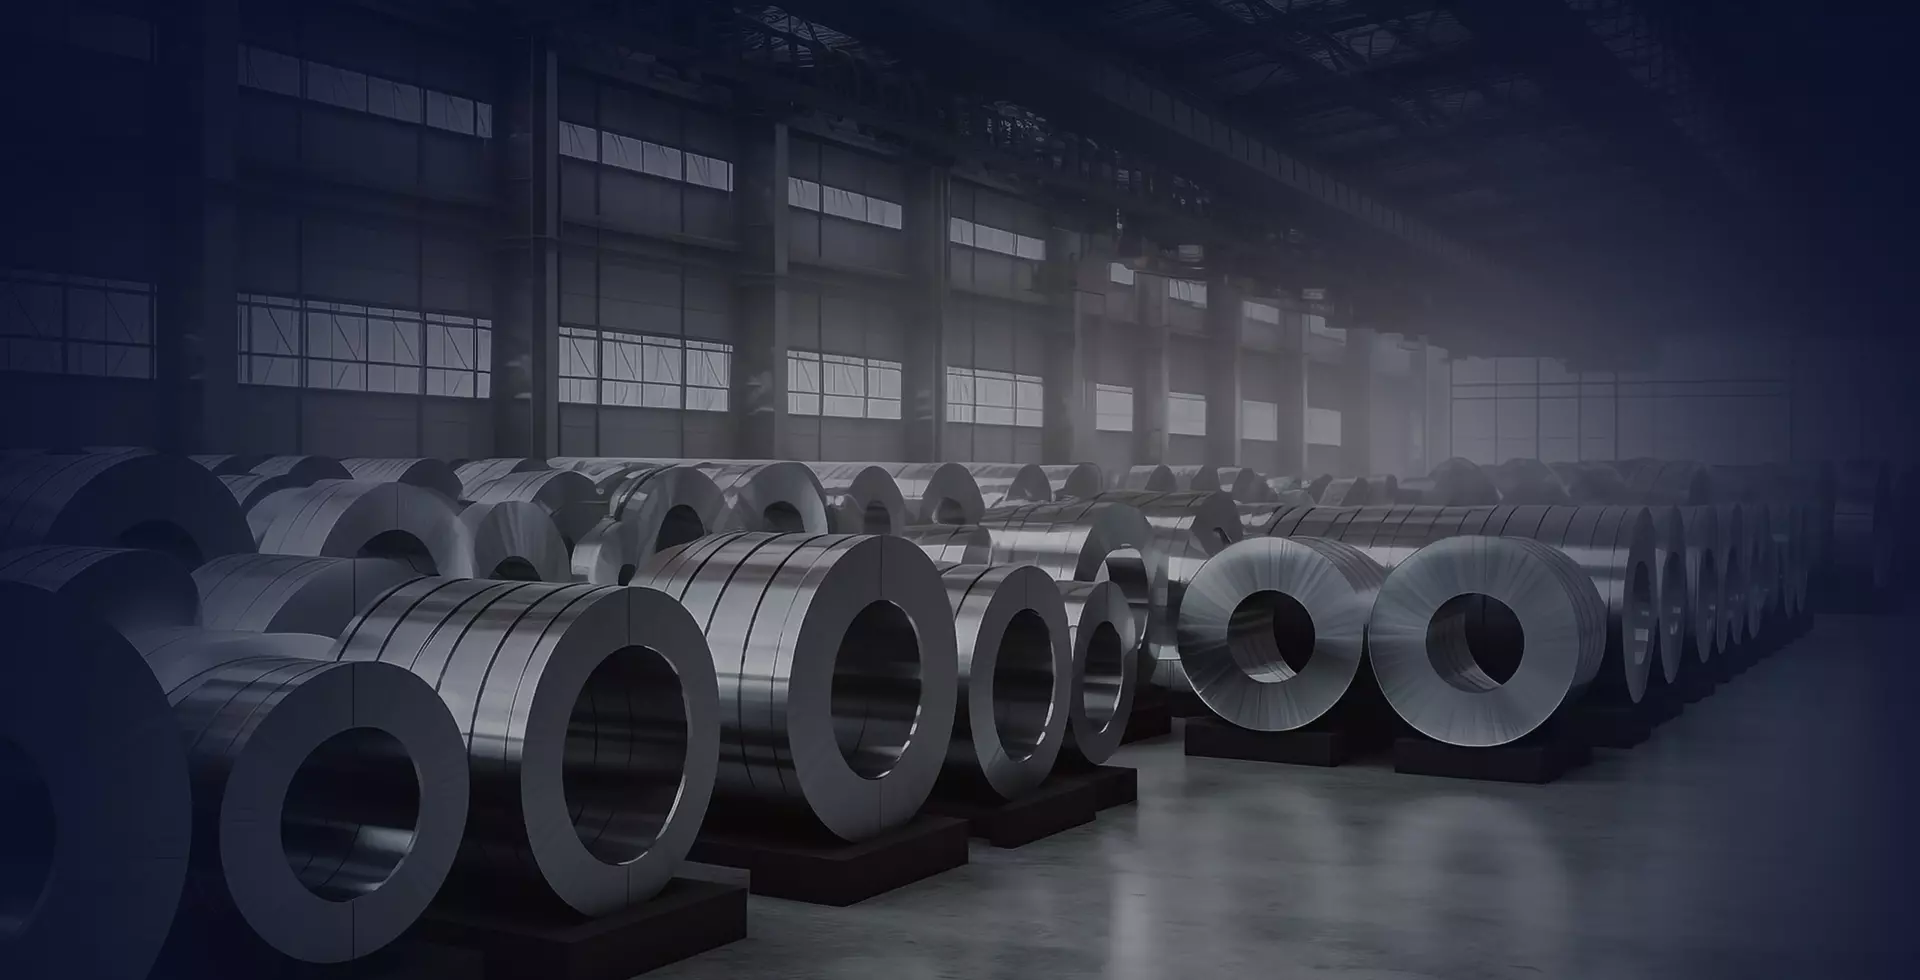 Gnee Steel Co., Ltd. est un important fabricant d'acier inoxydable en Chine. Nous produisons des tuyaux en acier inoxydable, des bobines en acier inoxydable, des tôles en acier inoxydable, des raccords de tuyauterie en acier inoxydable, des profilés en acier inoxydable.